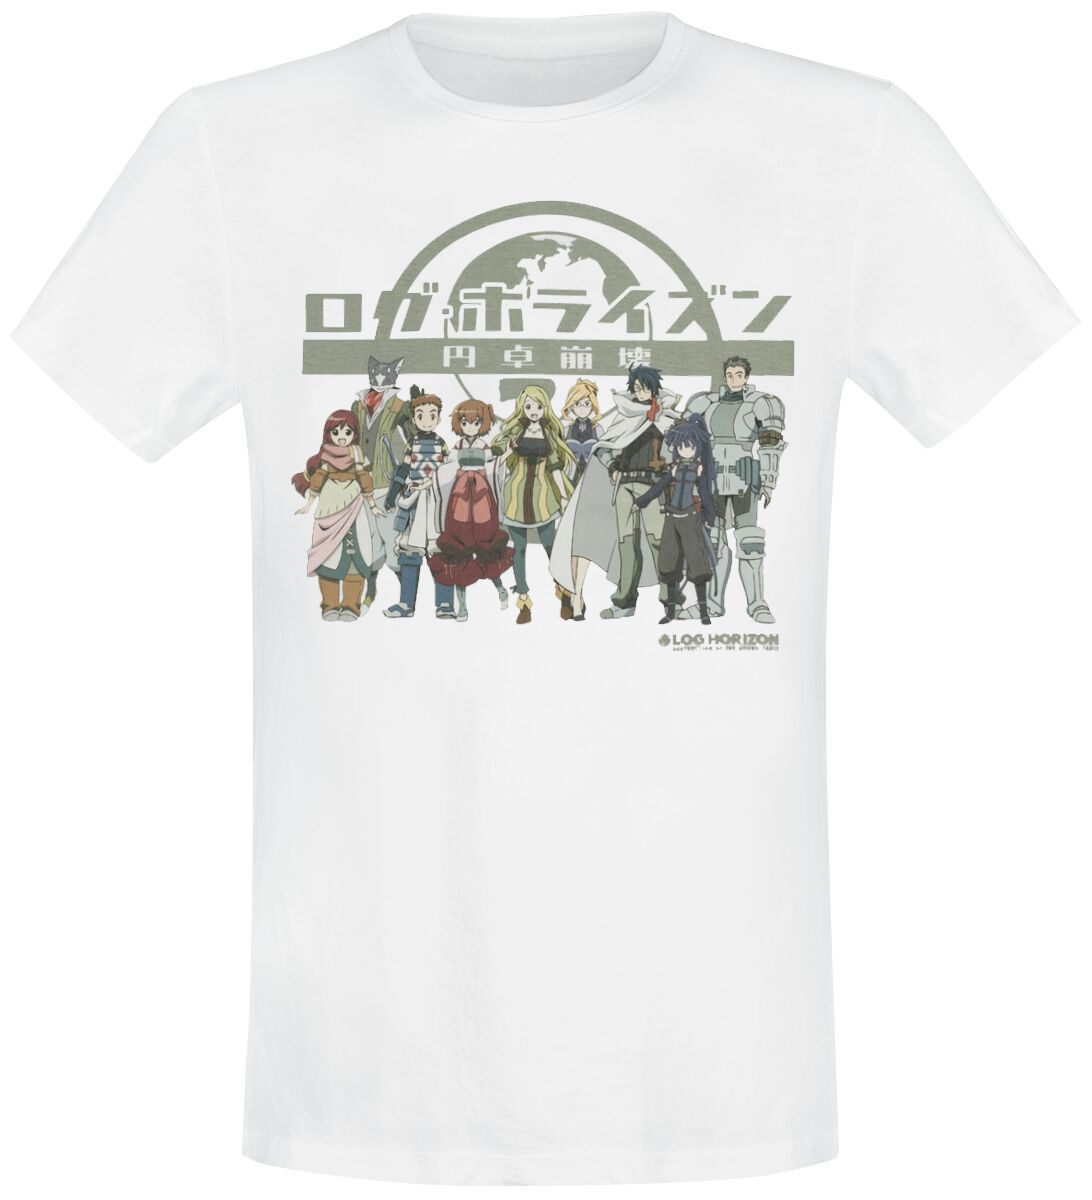 Log Horizon - Anime T-Shirt - Group - S bis L - für Männer - Größe M - weiß  - Lizenzierter Fanartikel